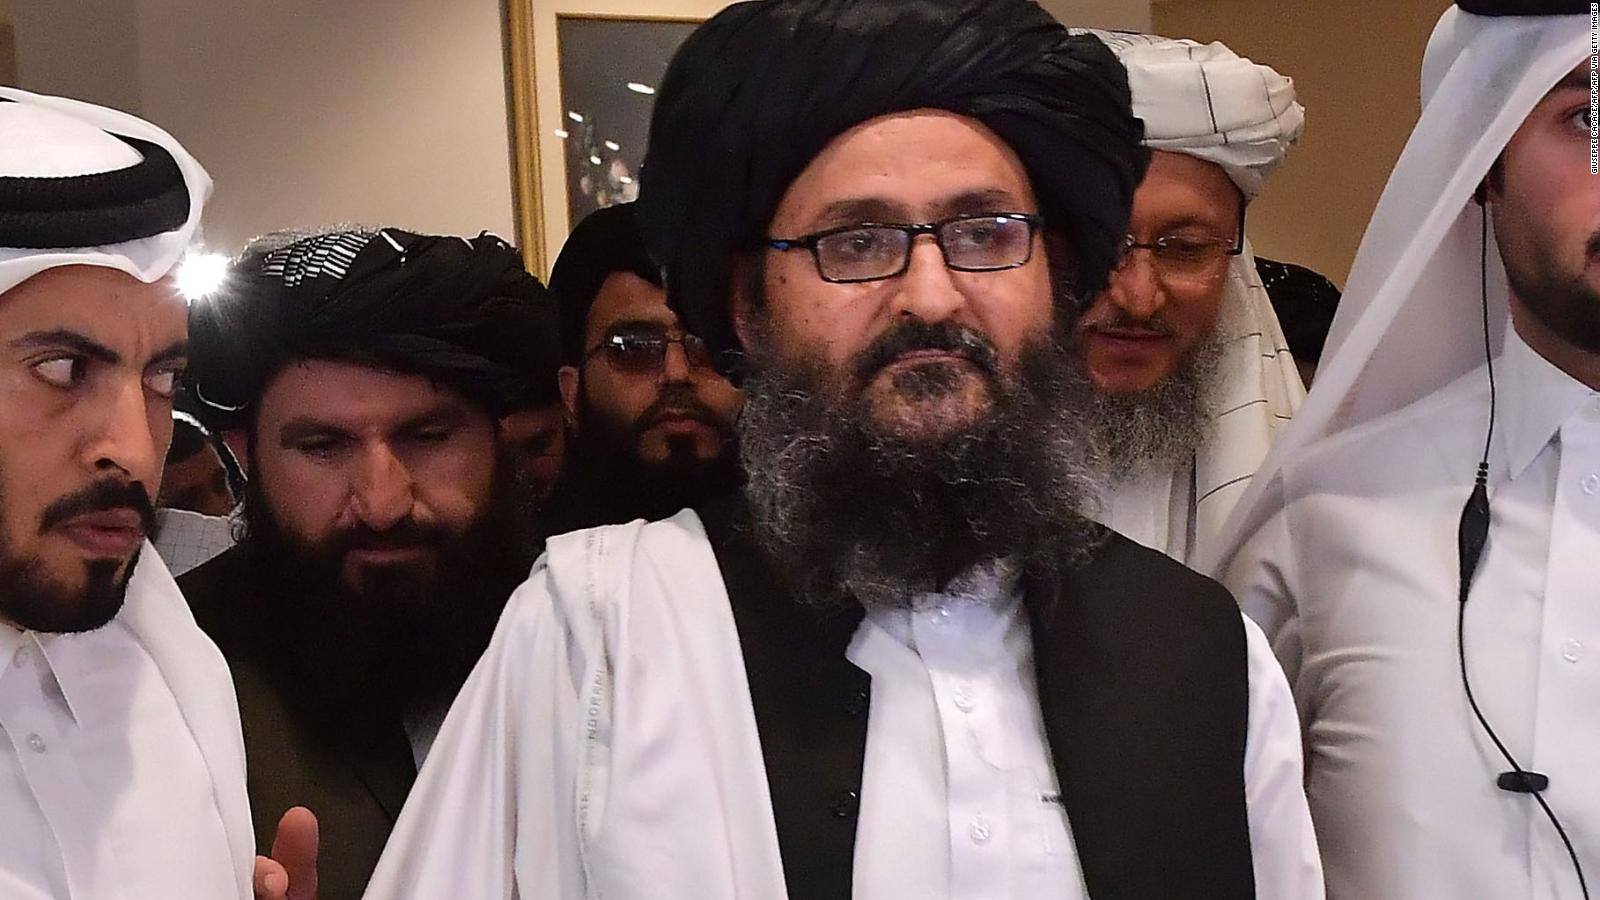 El mulá Abdulghani Baradar dirigirá el nuevo Gobierno, según fuentes de los talibanes